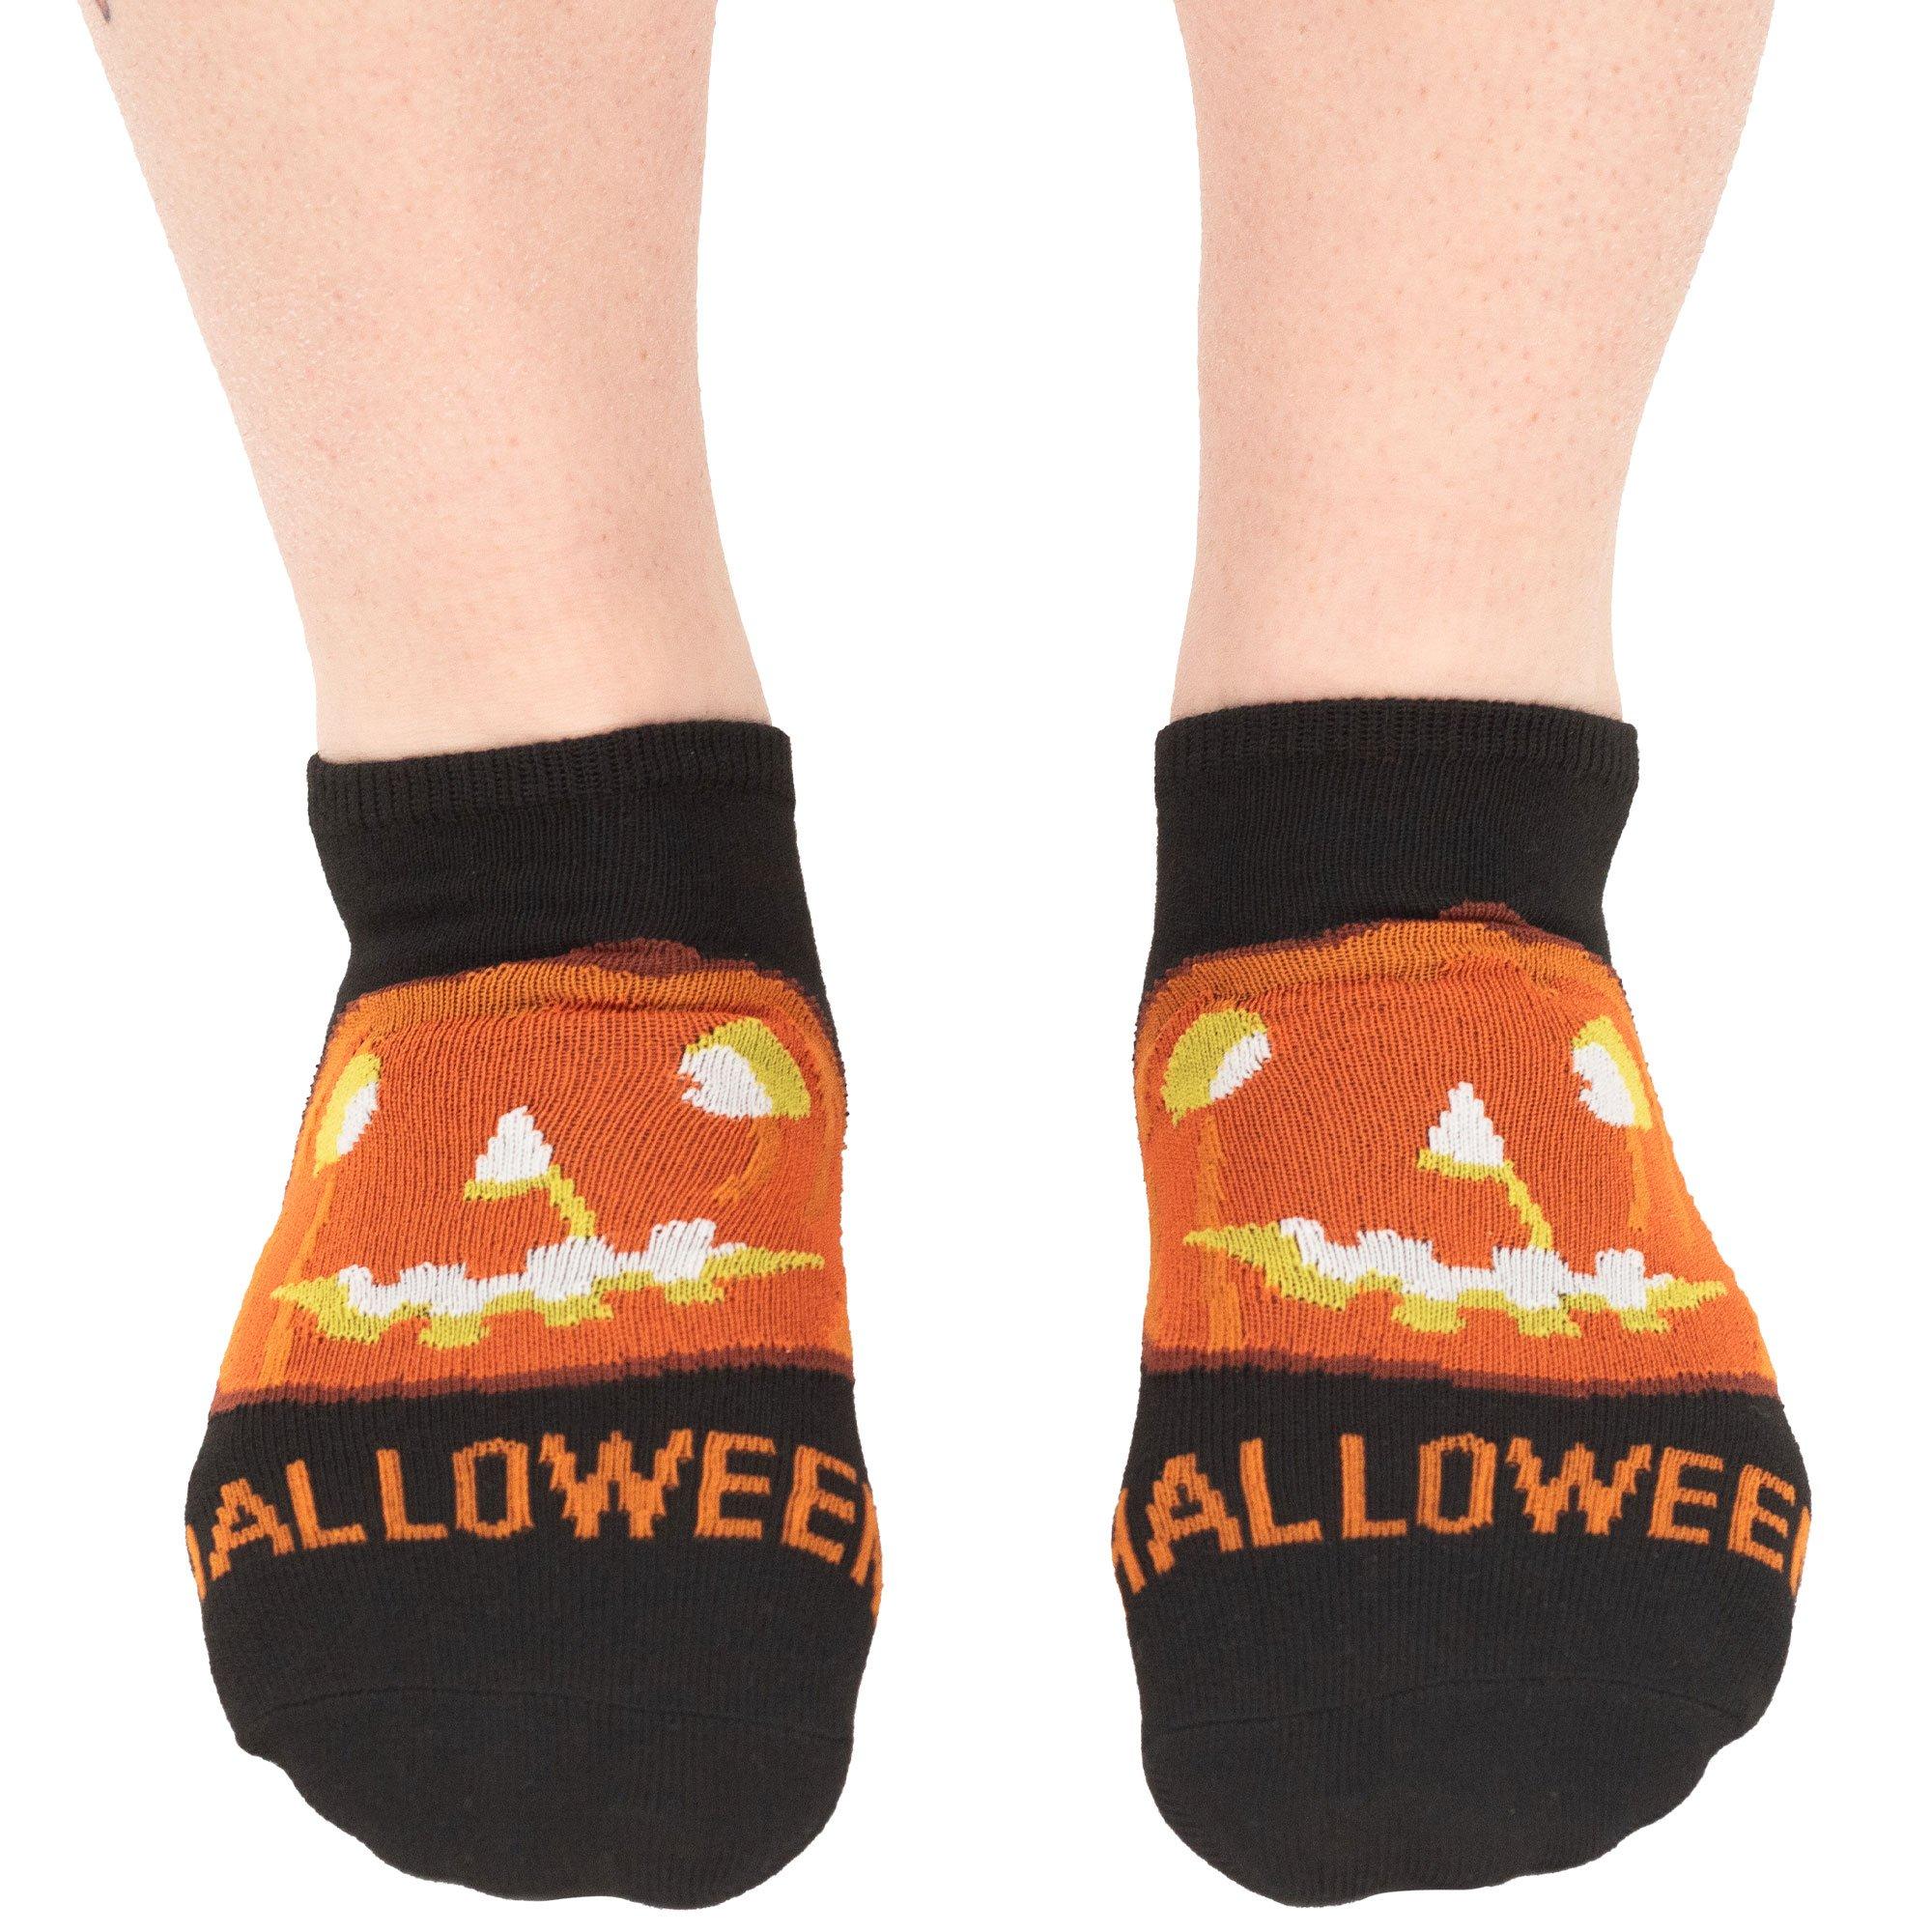 John Carpenter's Halloween Ankle Socks, 3 Pairs